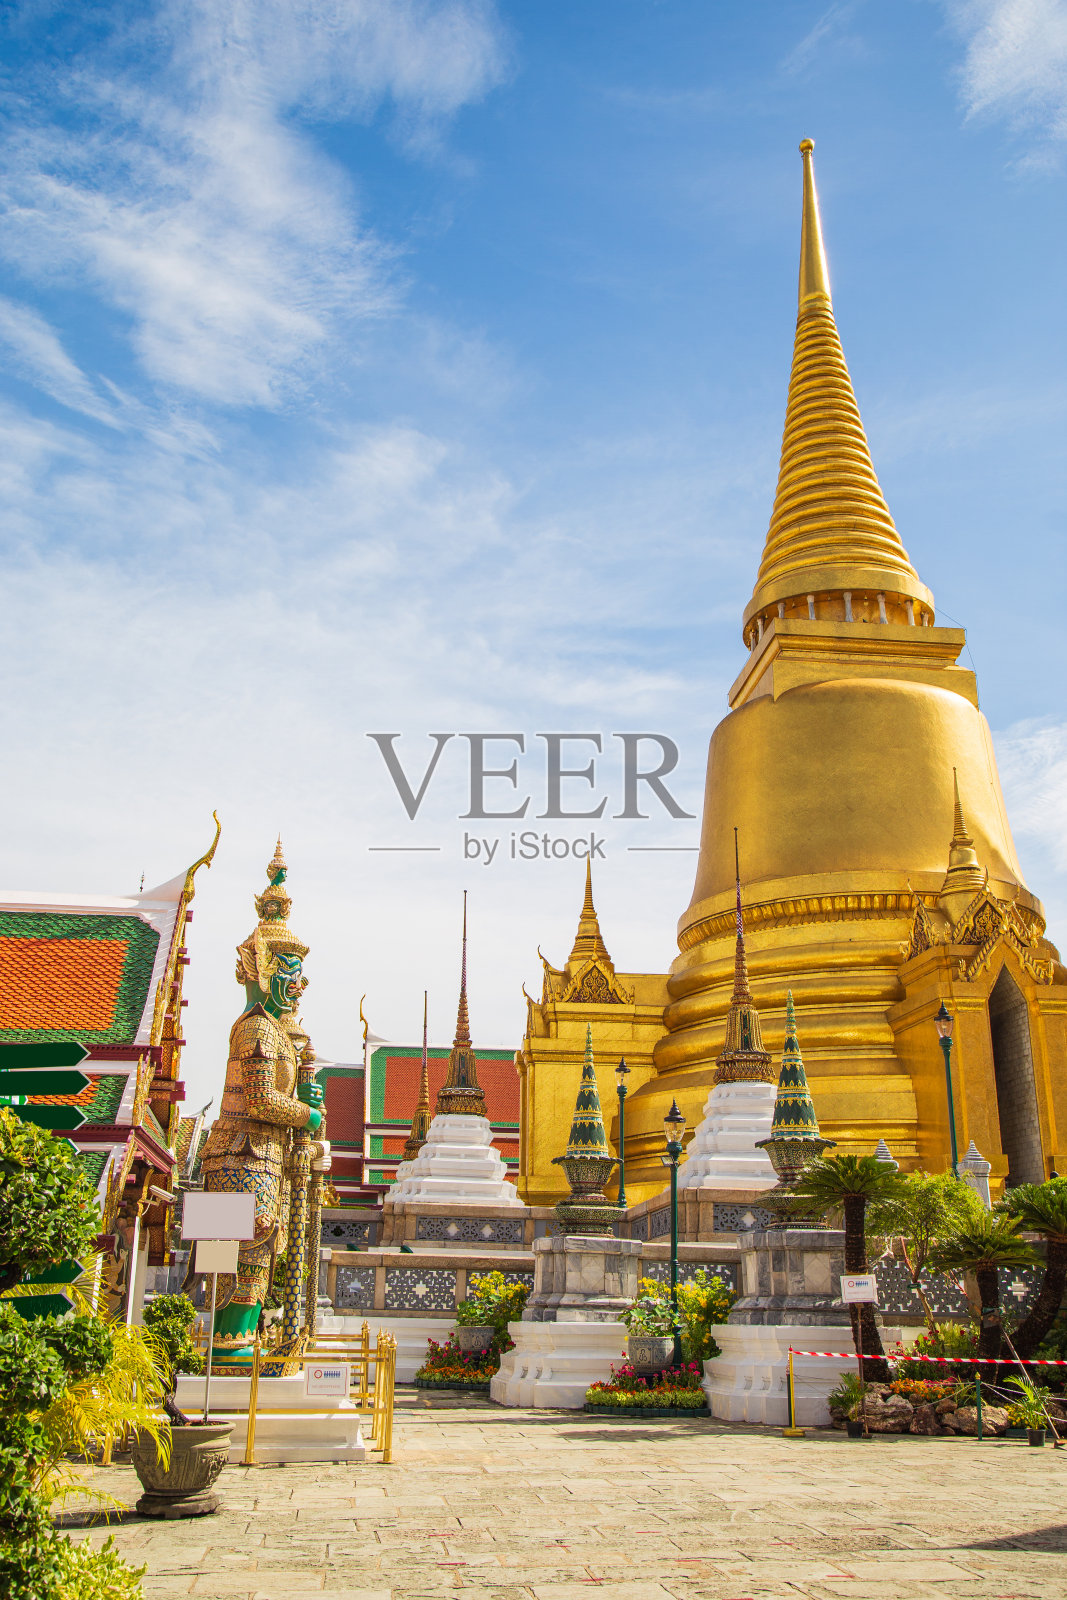 玉佛寺是泰国曼谷最著名的景点之一，坐落在玉佛寺内，有一座金色的佛塔，是一座恶魔守护的雕像照片摄影图片